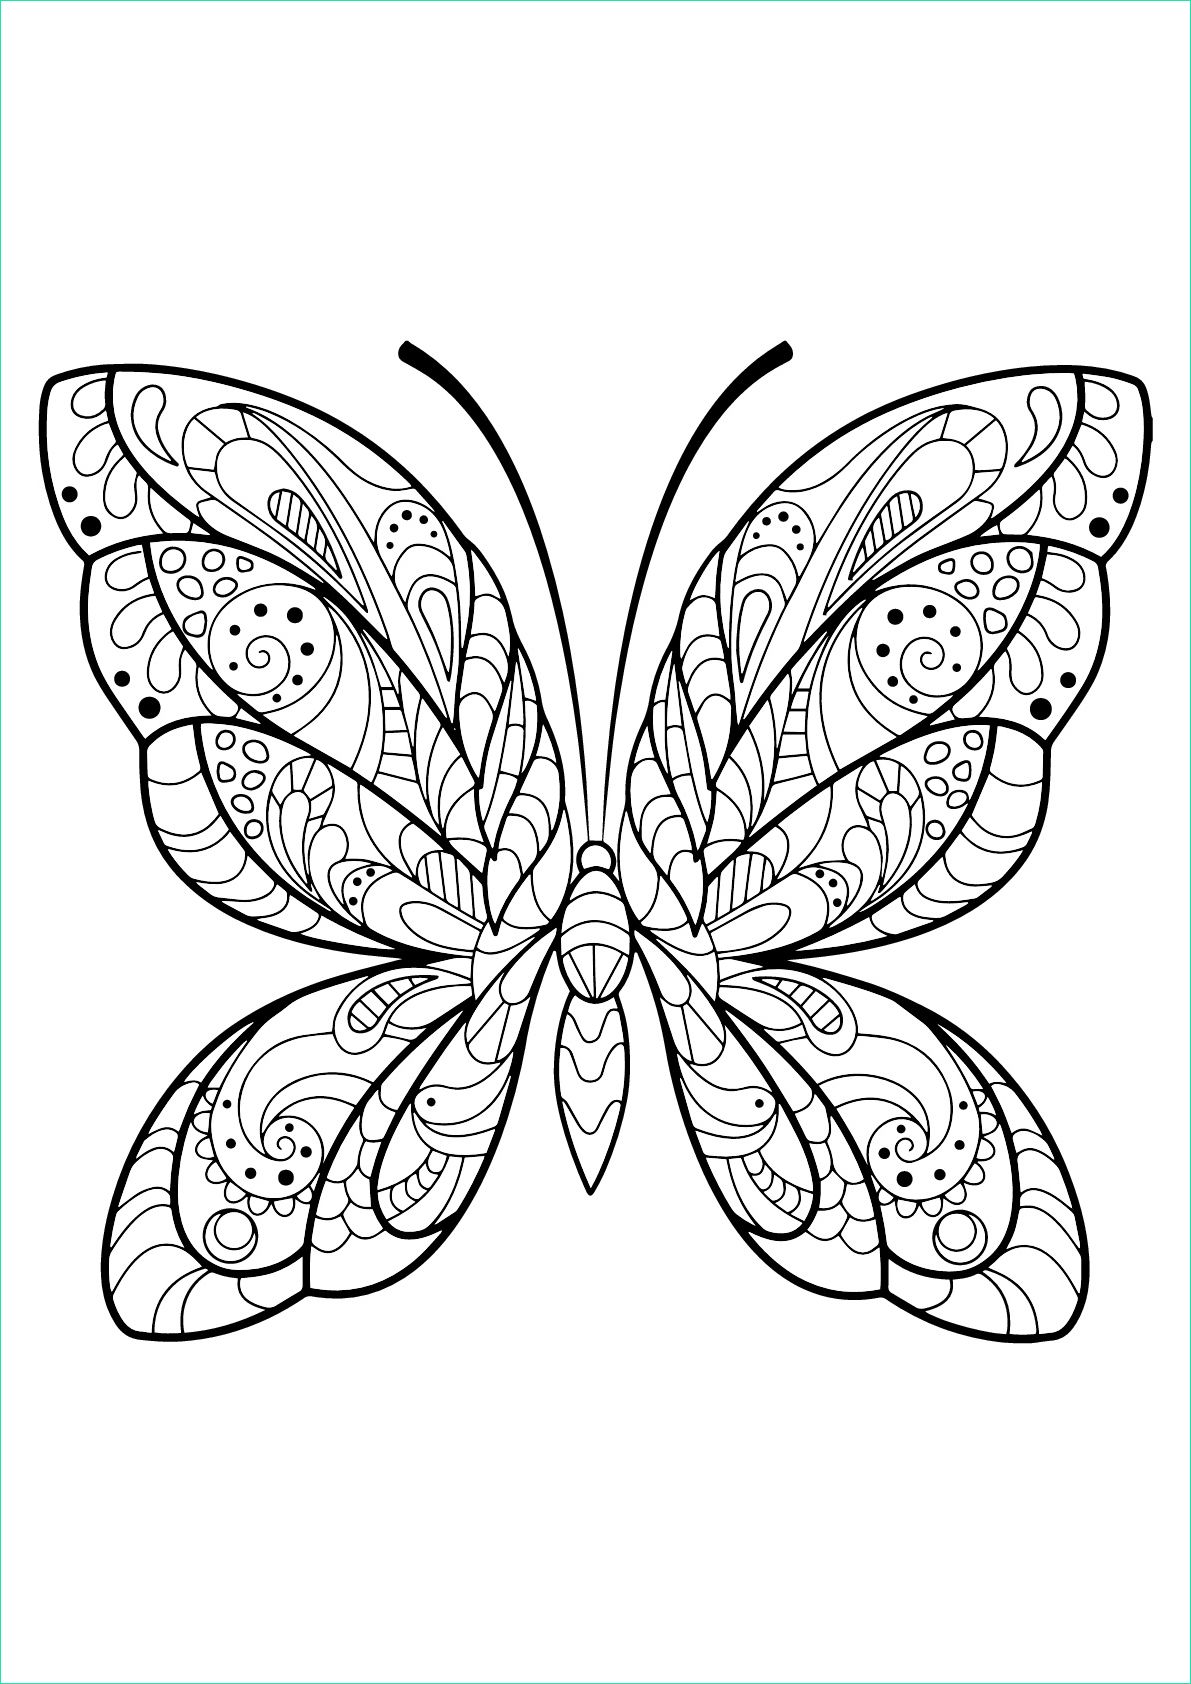 Coloriage à Imprimer Papillon Beau Galerie Image De Papillons à Imprimer Et Colorier Coloriage De